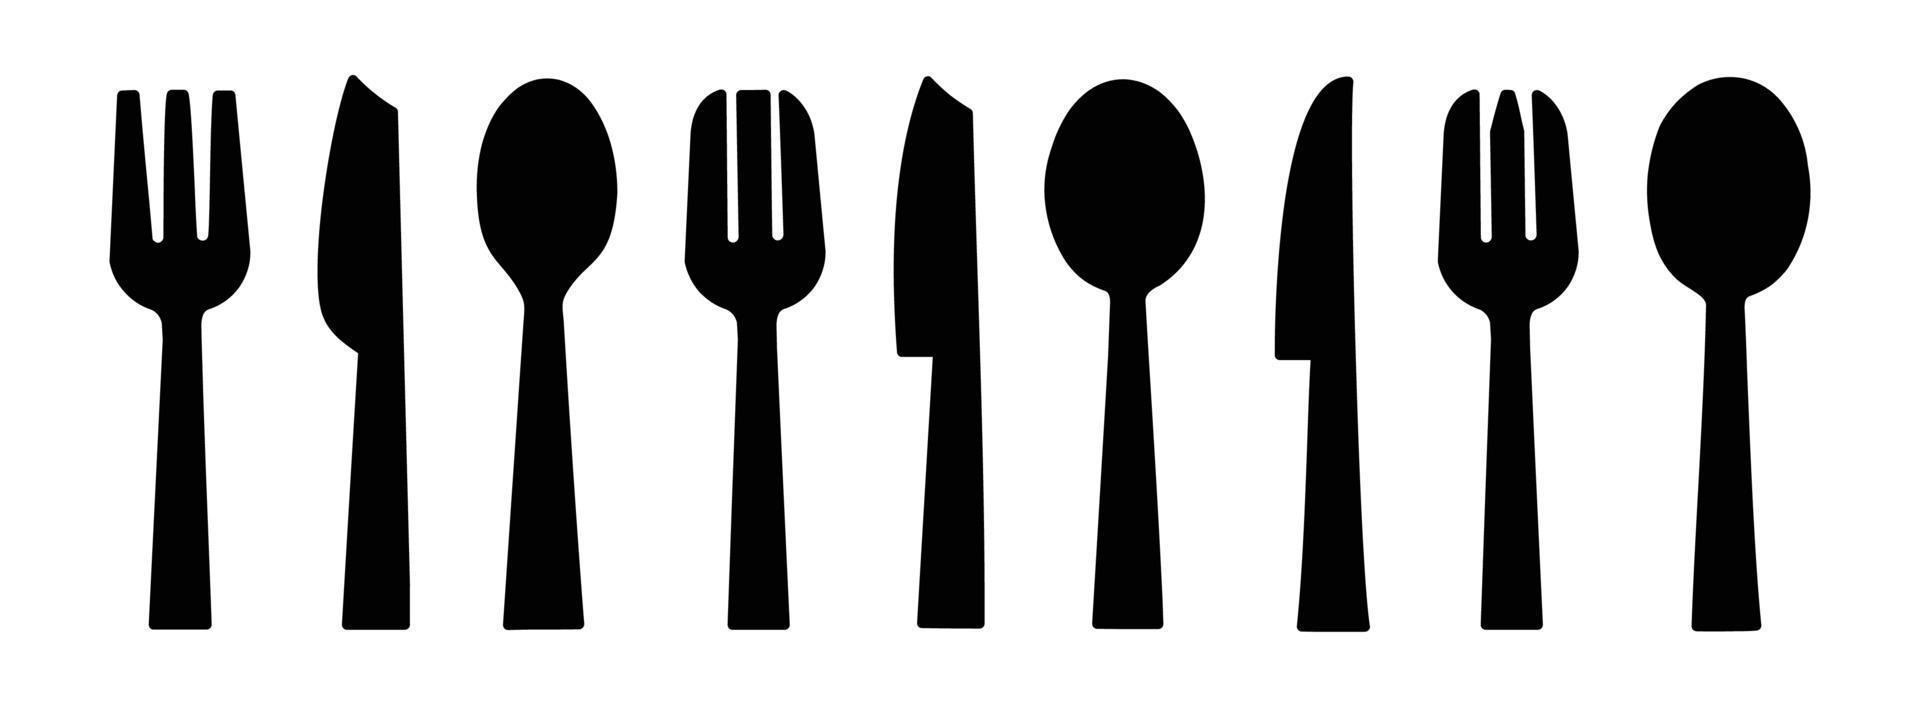 cuchara de ilustración vectorial de vajilla, tenedor, cuchillo y plato conjunto de iconos en estilo de línea, colección de servicio de cena vector